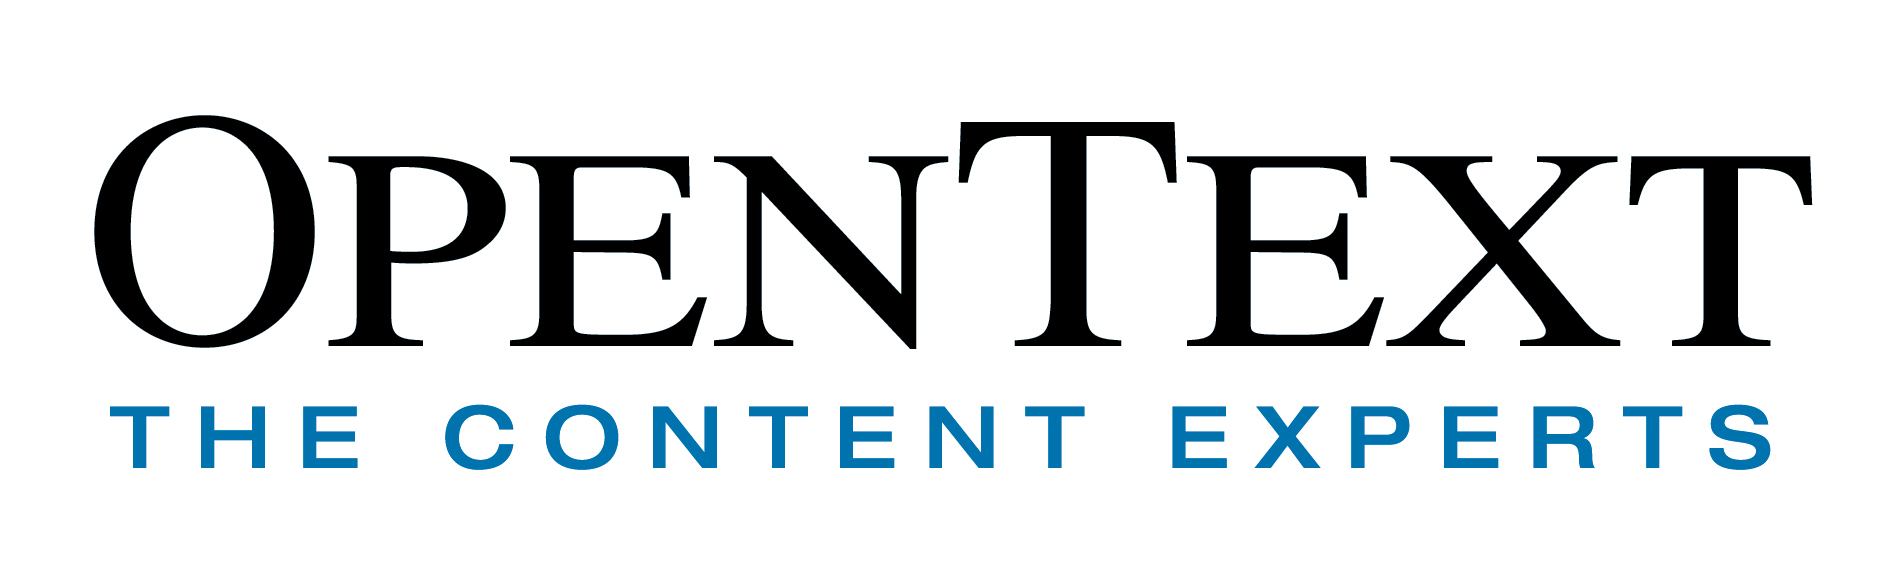 OpenText-Logo